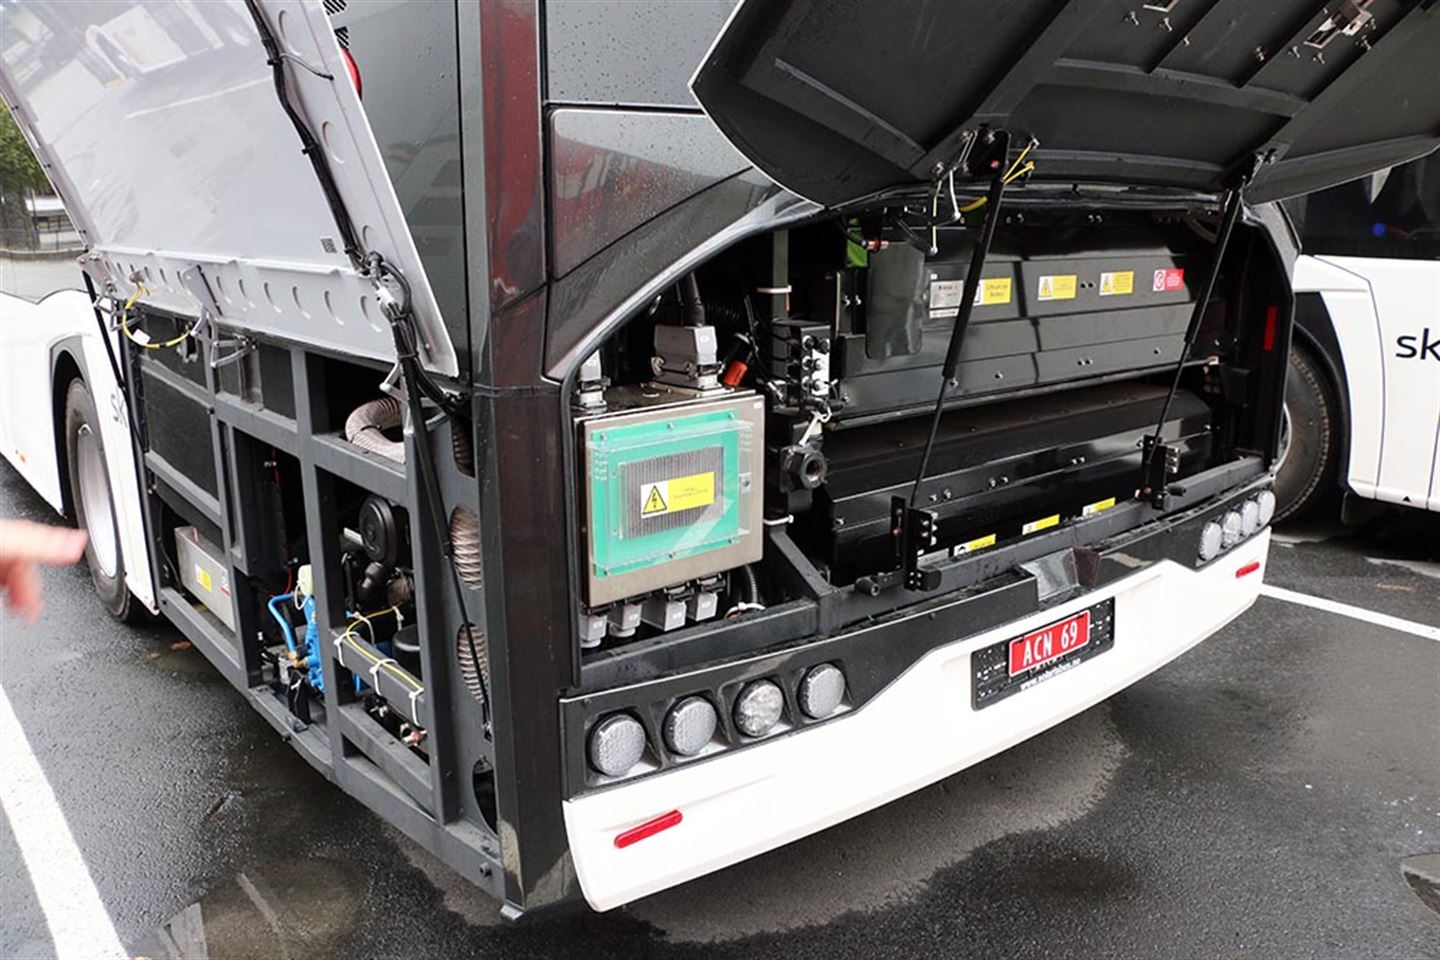 Dei oppladbare batteria er plassert heilt bak i bussen. På venstre side er det plugg-in lading for batteria.